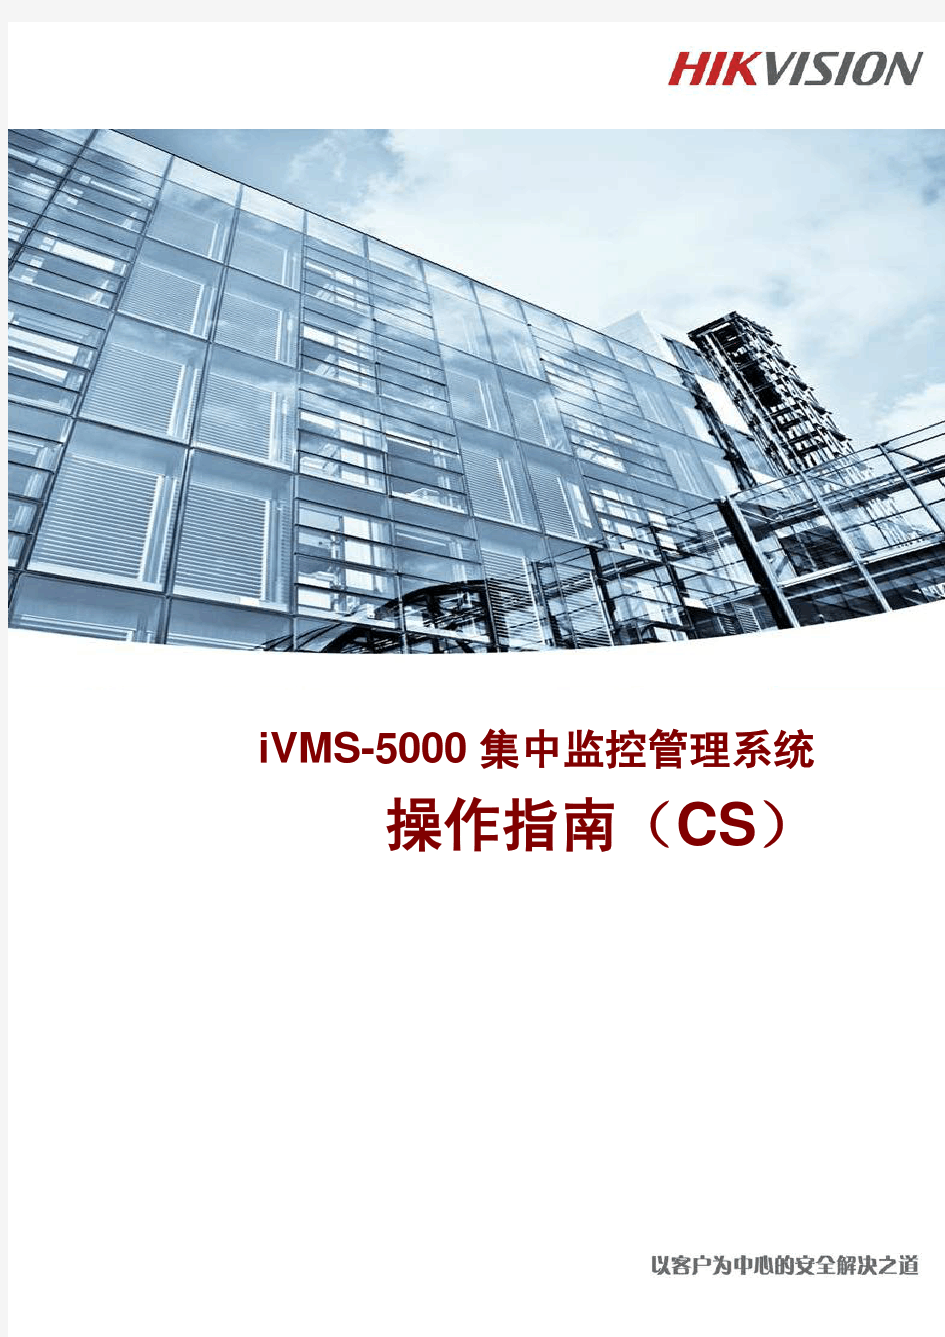 iVMS-5000集中监控管理系统 操作指南(CS)